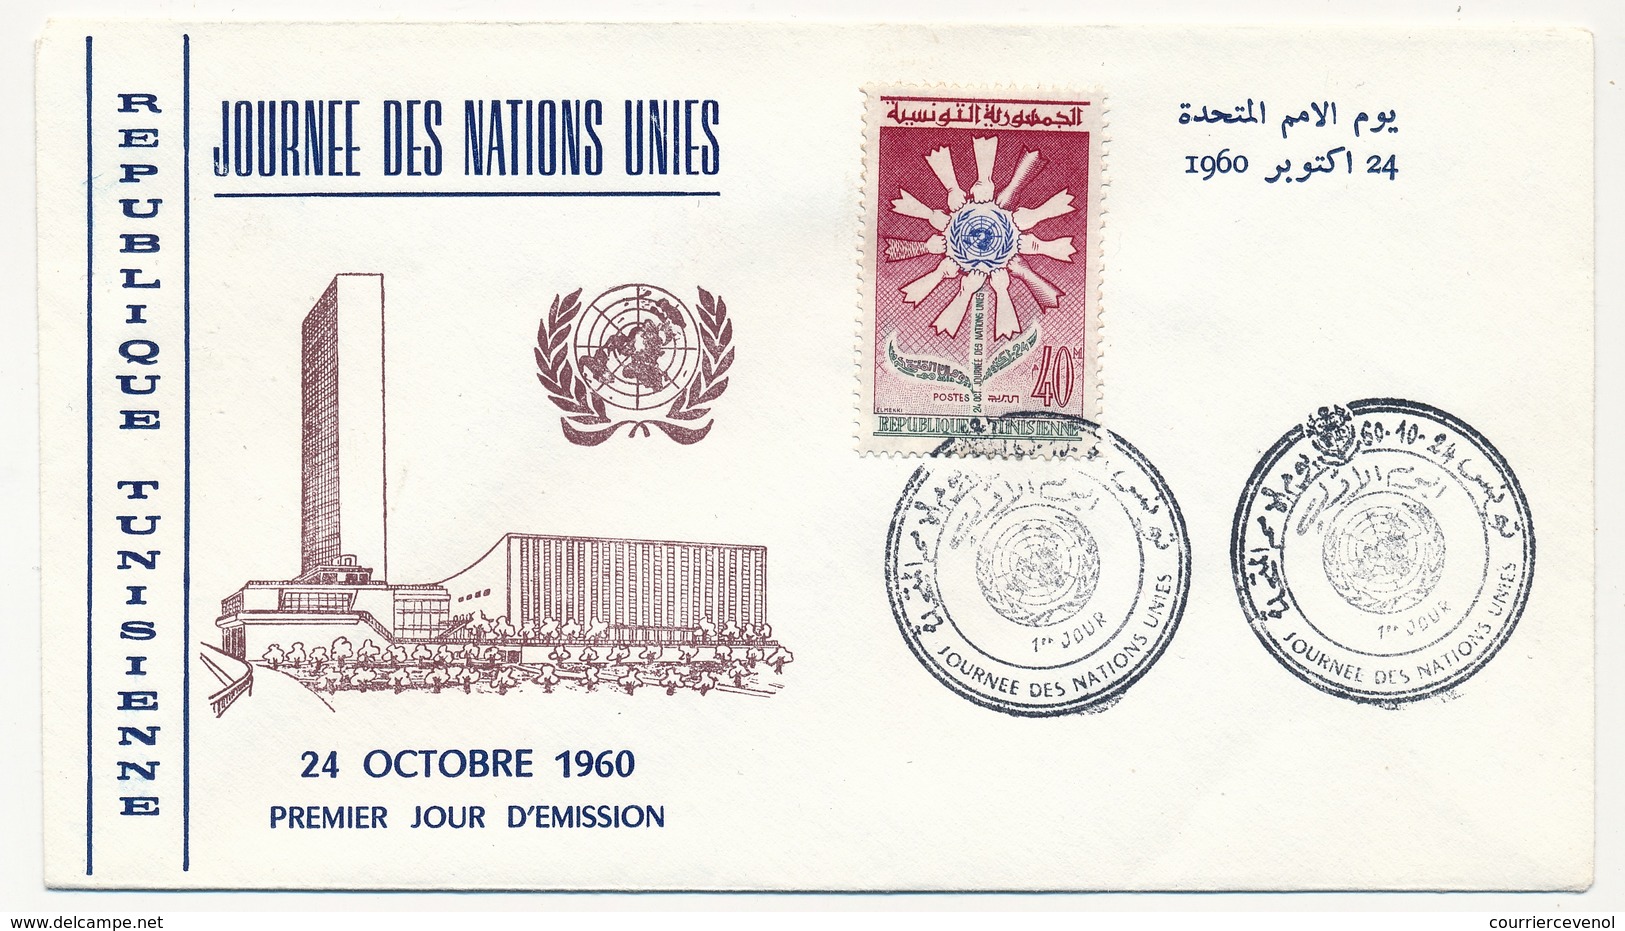 TUNISIE - Enveloppe FDC - Journée Des Nations Unies - TUNIS 1960 - Tunisie (1956-...)